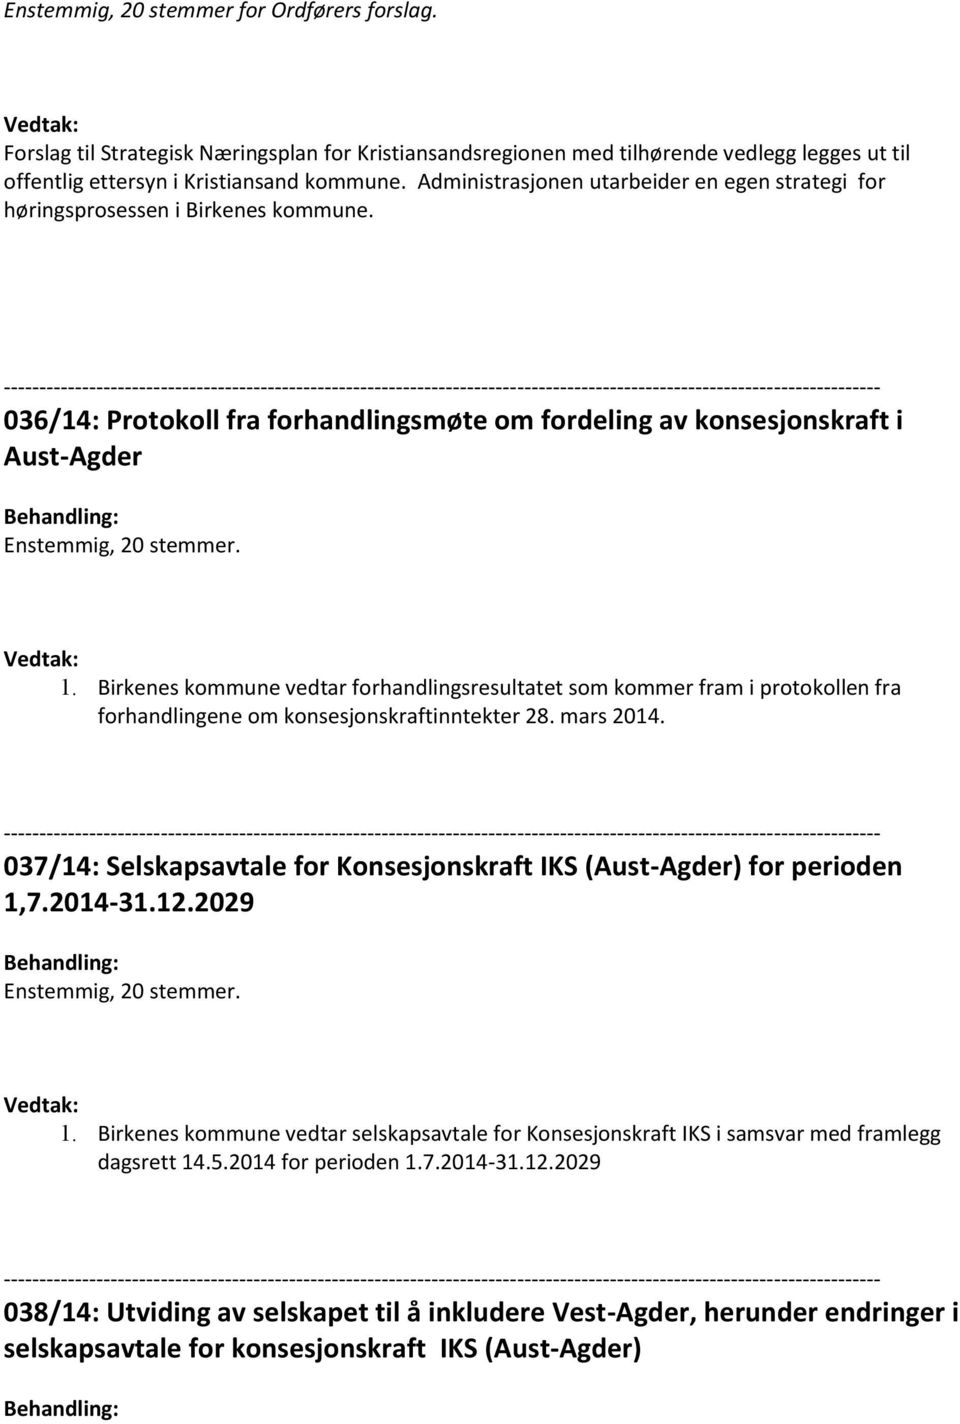 Birkenes kommune vedtar forhandlingsresultatet som kommer fram i protokollen fra forhandlingene om konsesjonskraftinntekter 28. mars 2014.